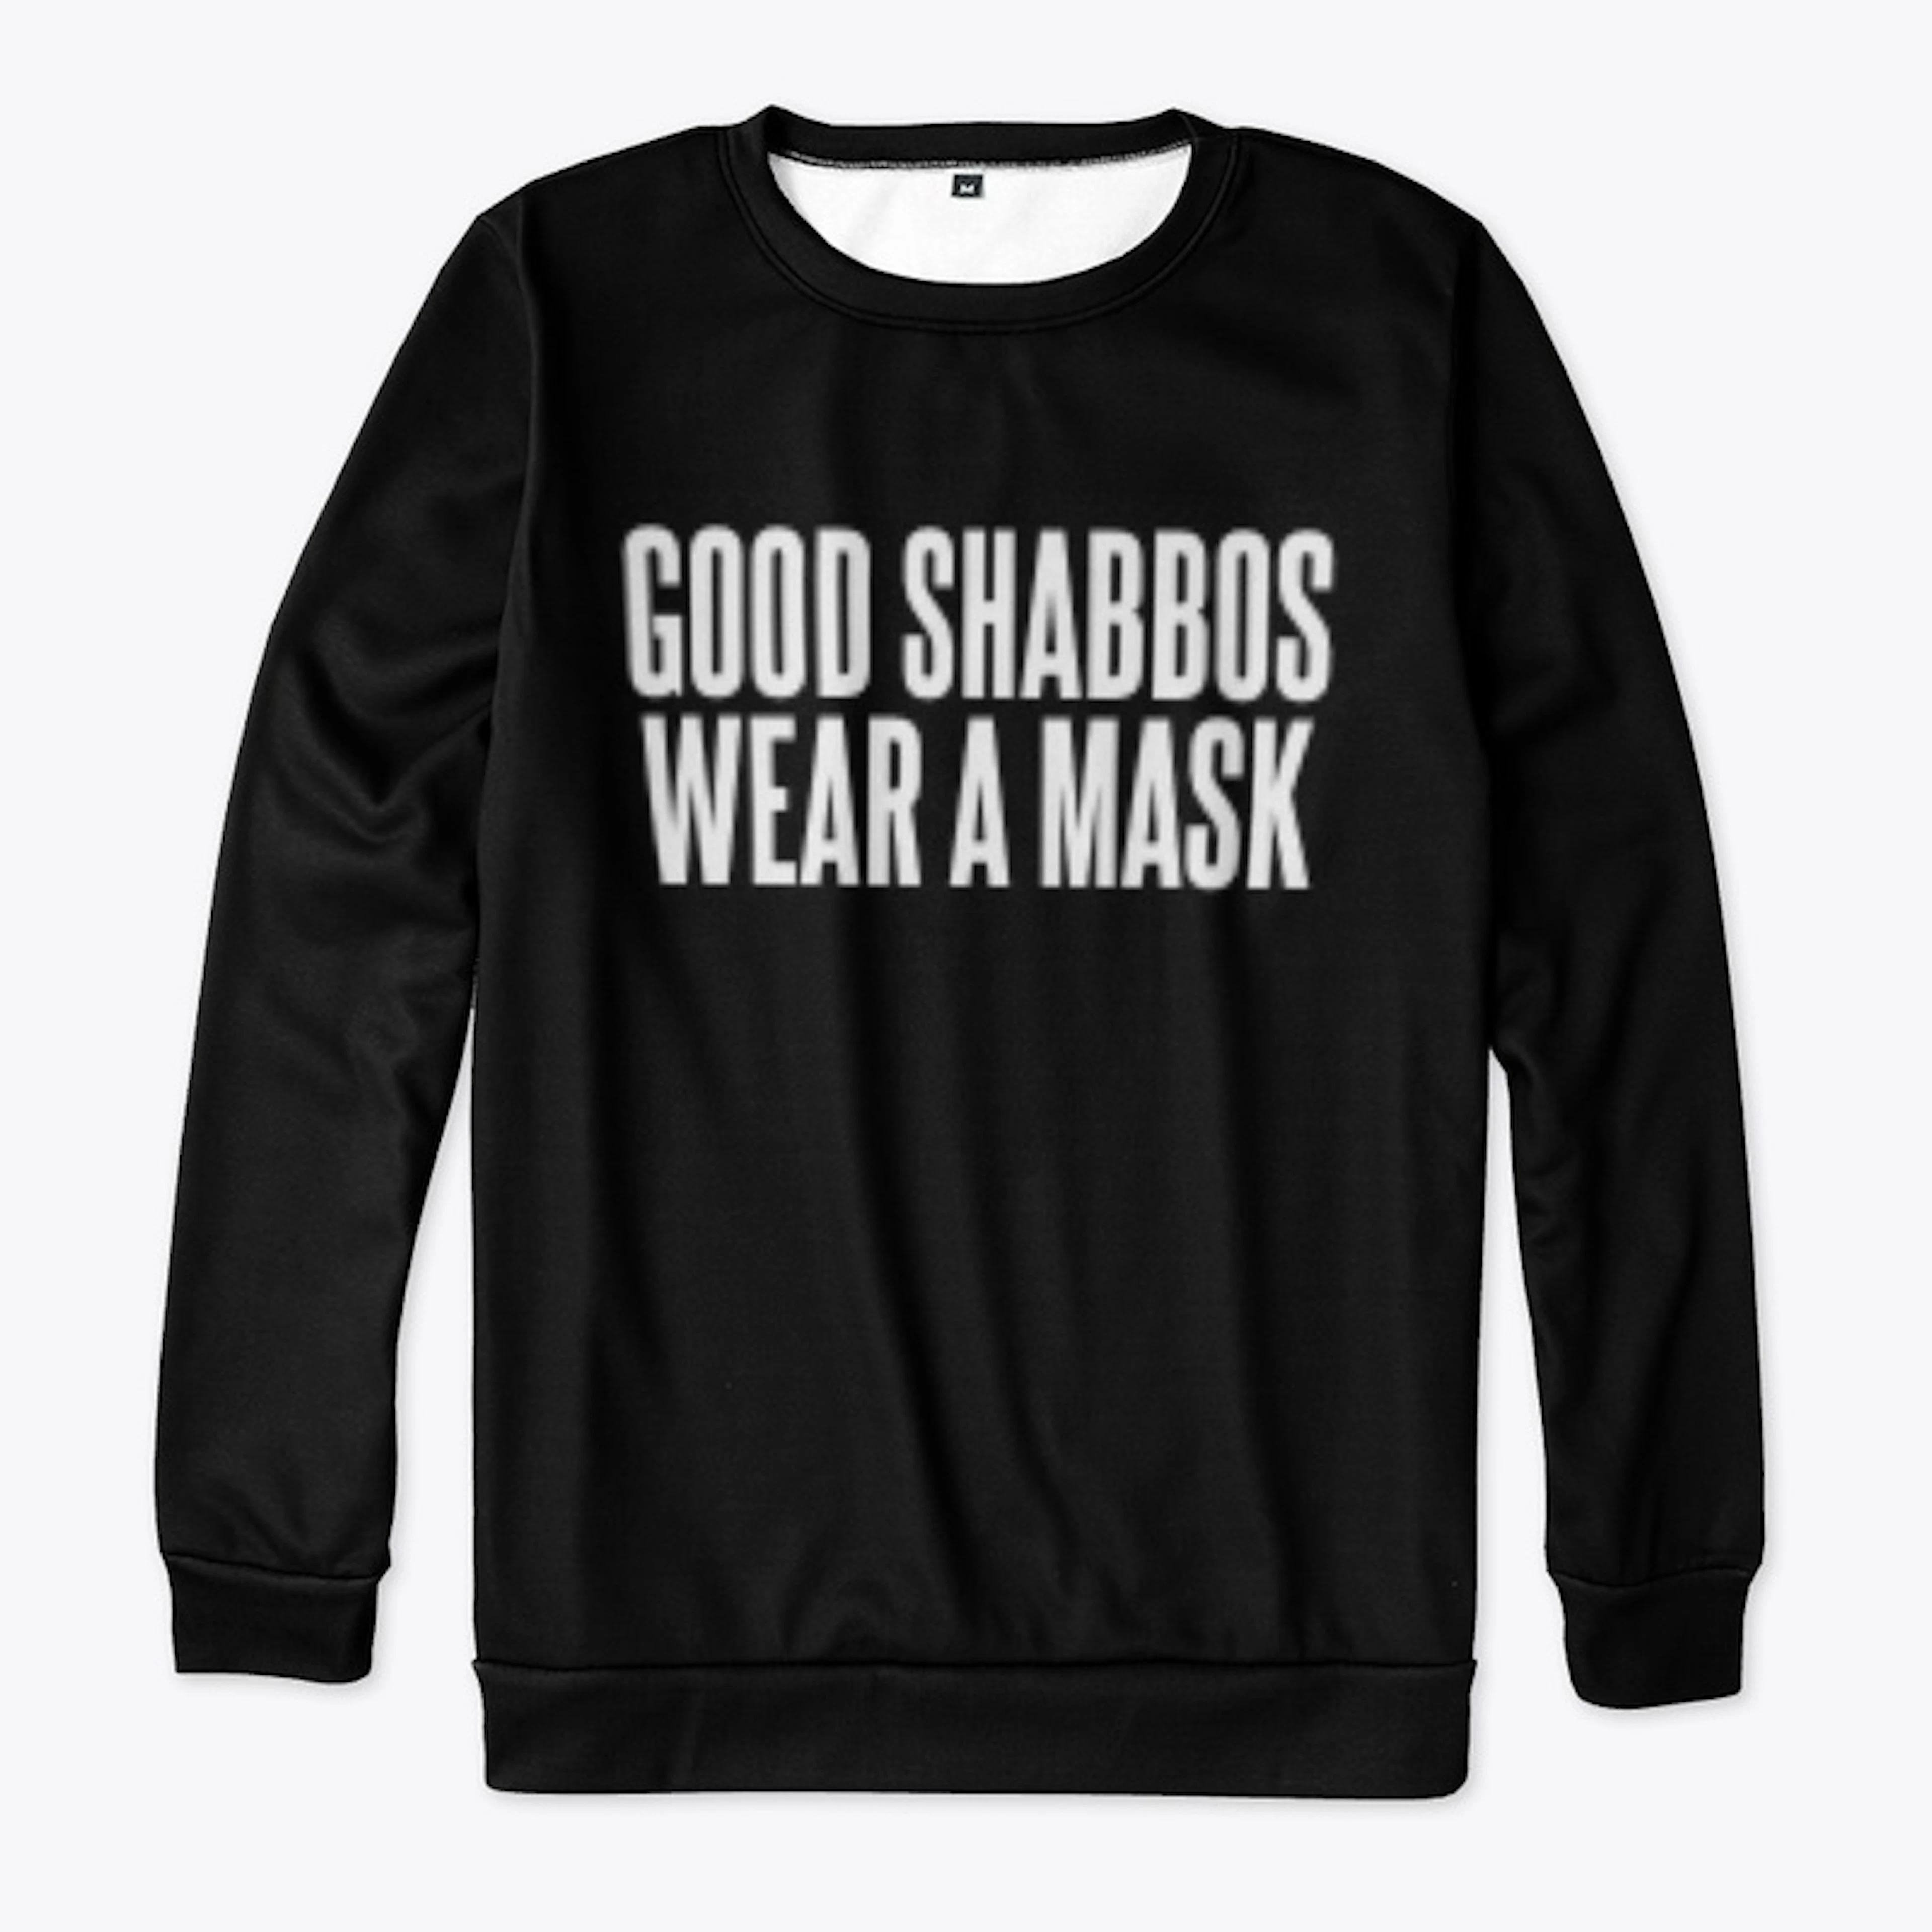 GOOD SHABBOS WEAR A MASK